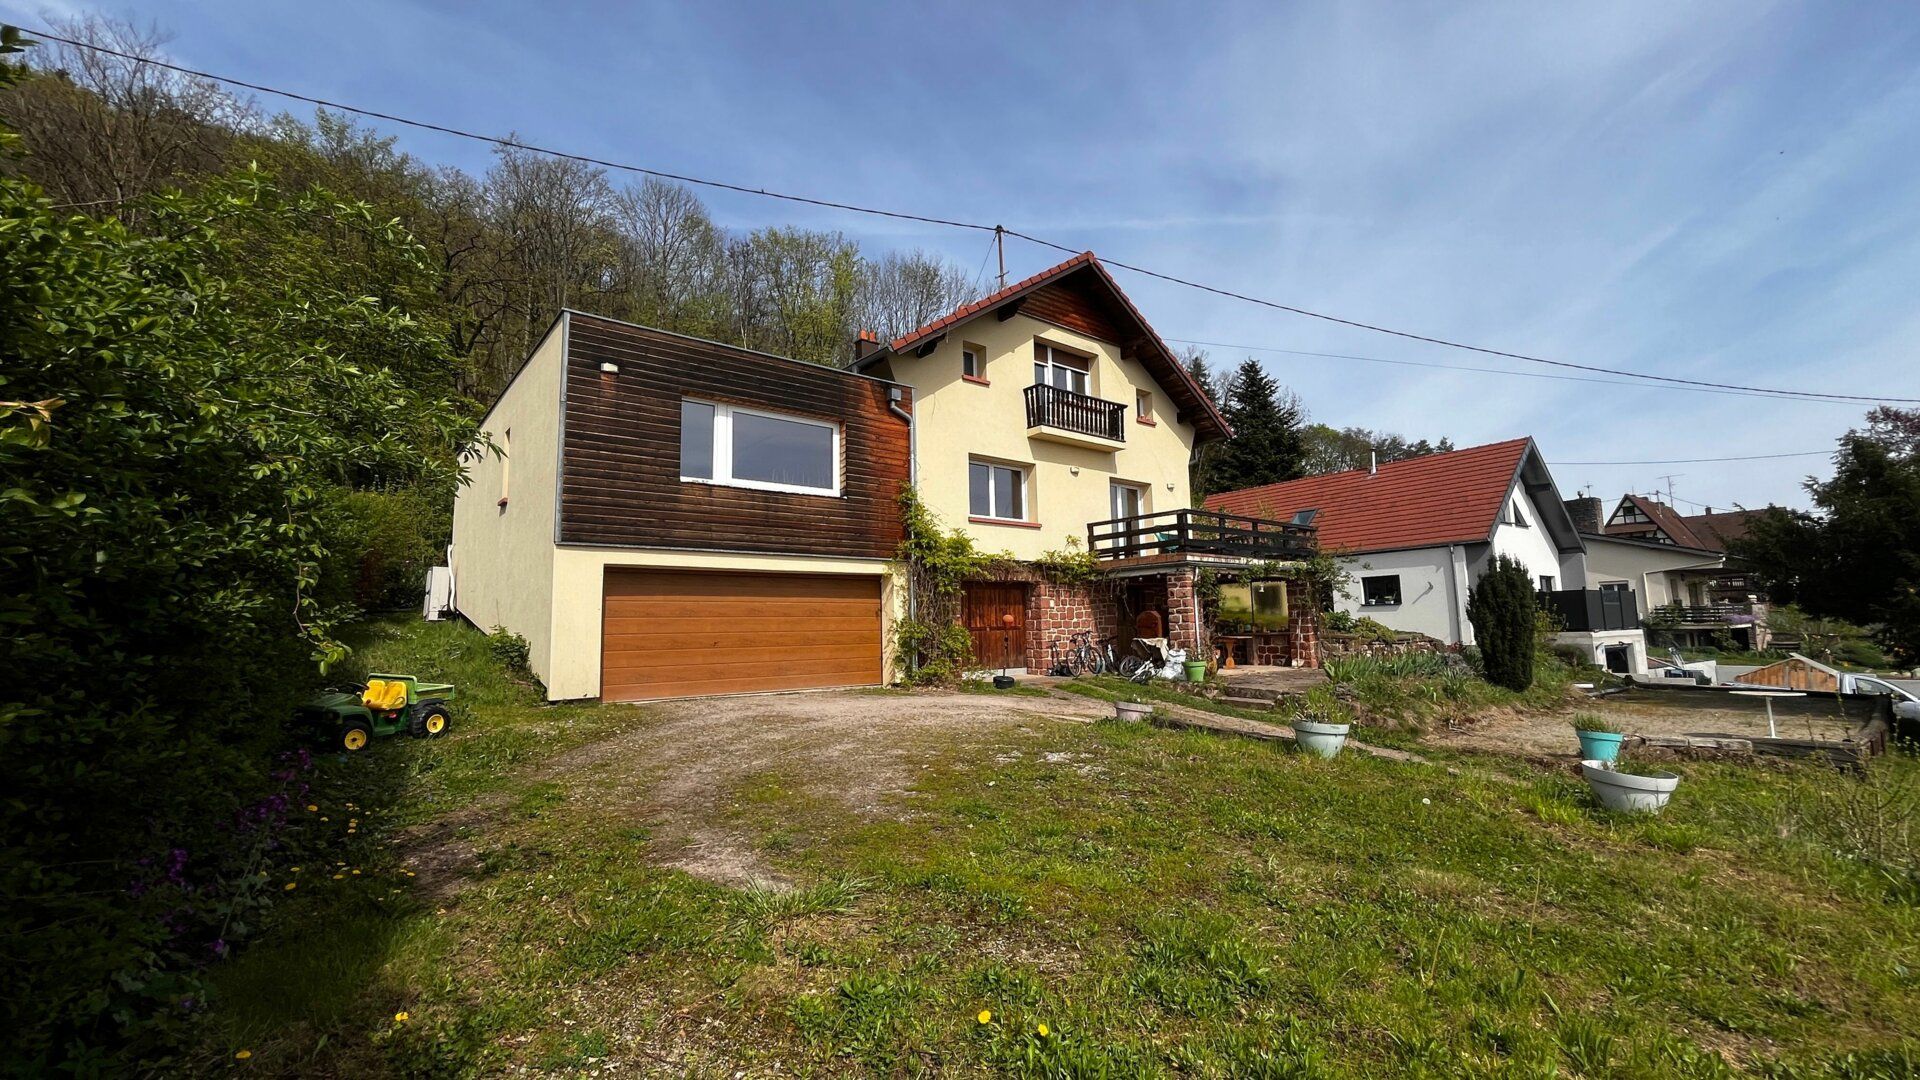 Maison à vendre 8 180m2 à Neuwiller-lès-Saverne vignette-13